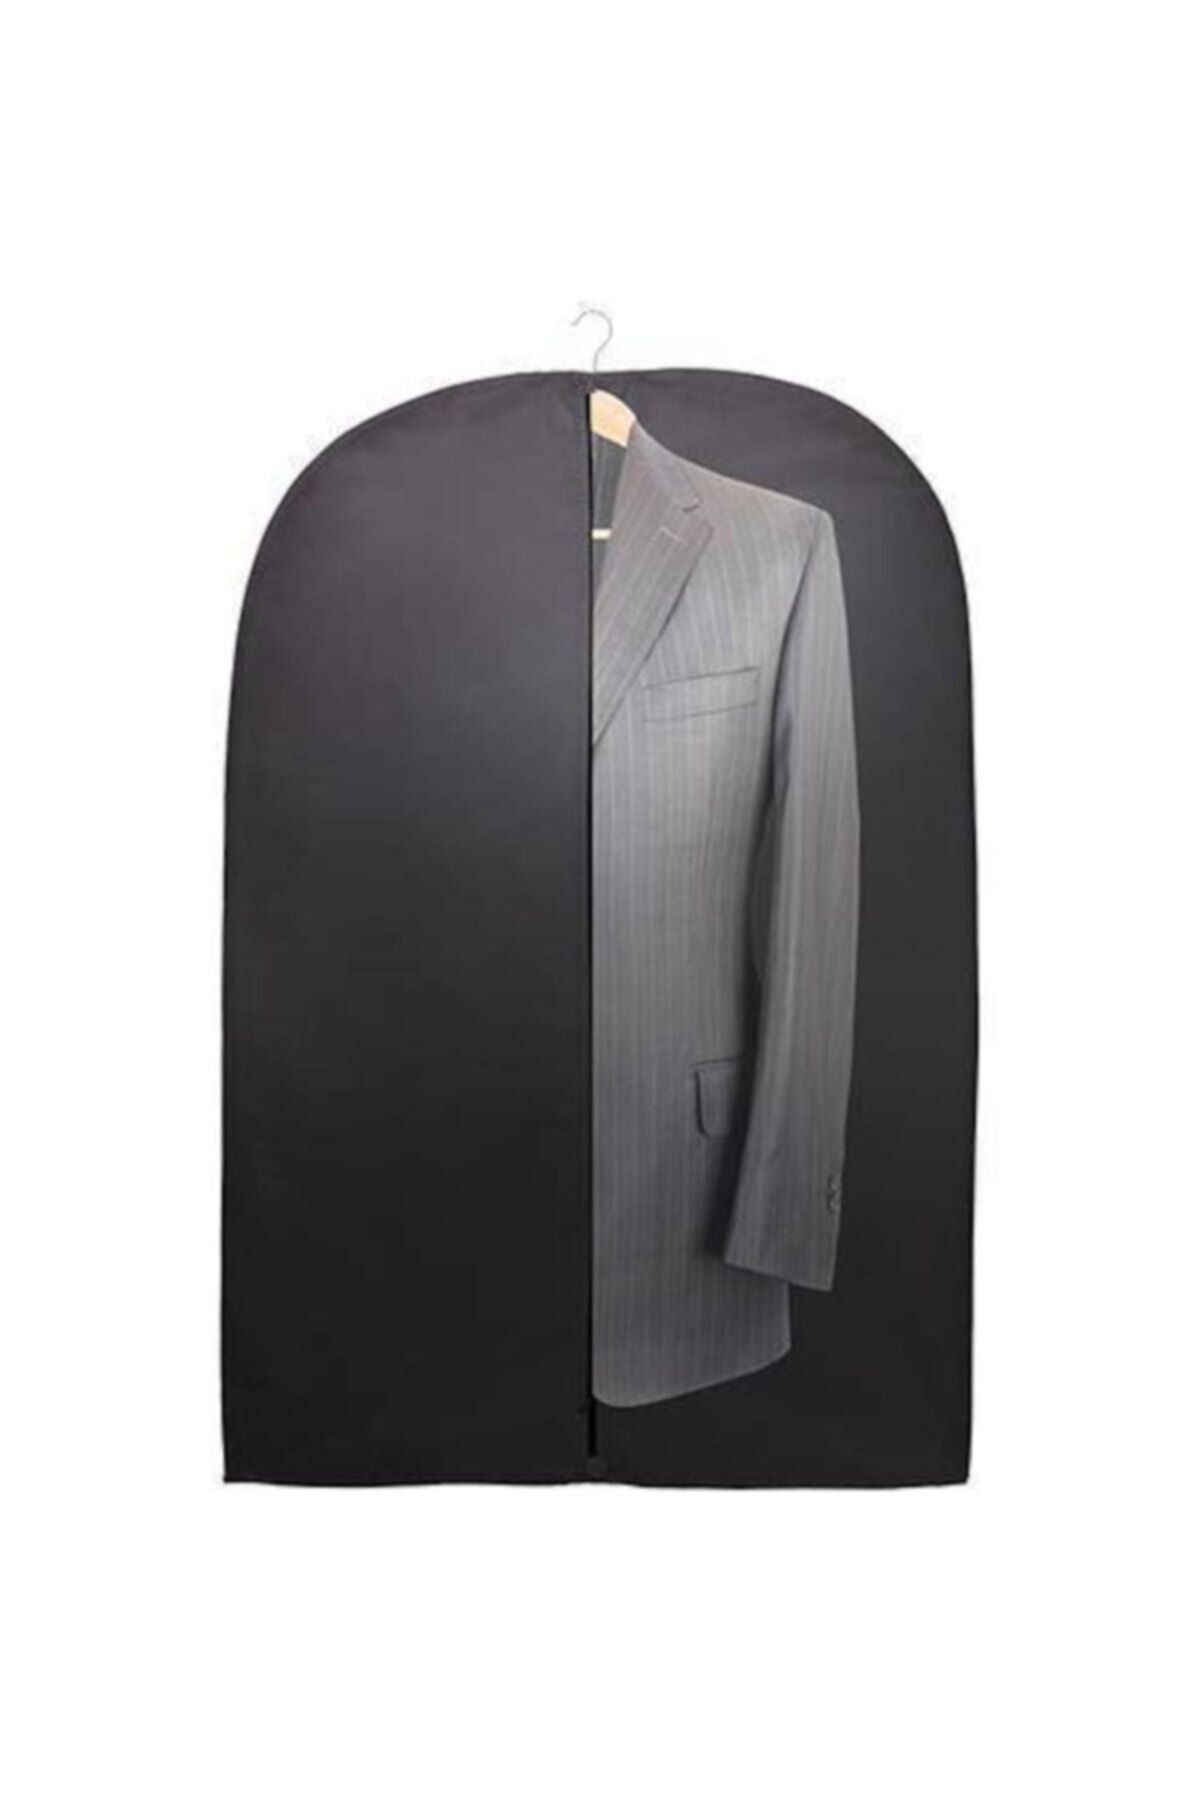 Genel Markalar Siyah 5 Adet Fermuarlı Ceket Elbise Takım Elbise Kılıfı Koruyucu Giysi Saklama Çantası